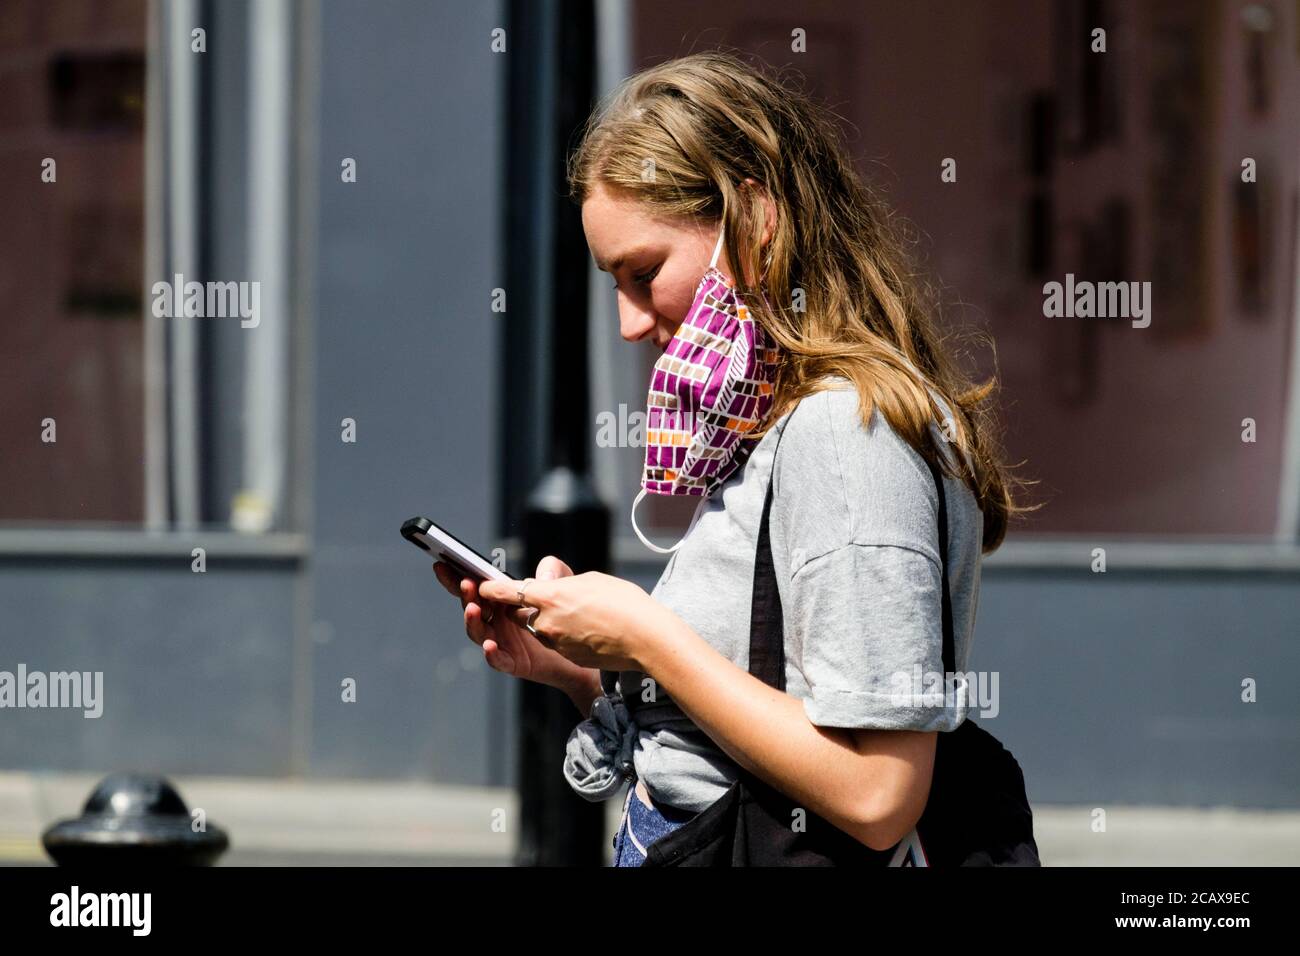 Die junge Frau mit Gesichtsbedeckung, die an einem Ohr hängt, nutzt das Smartphone auf der Londoner Straße. Stockfoto